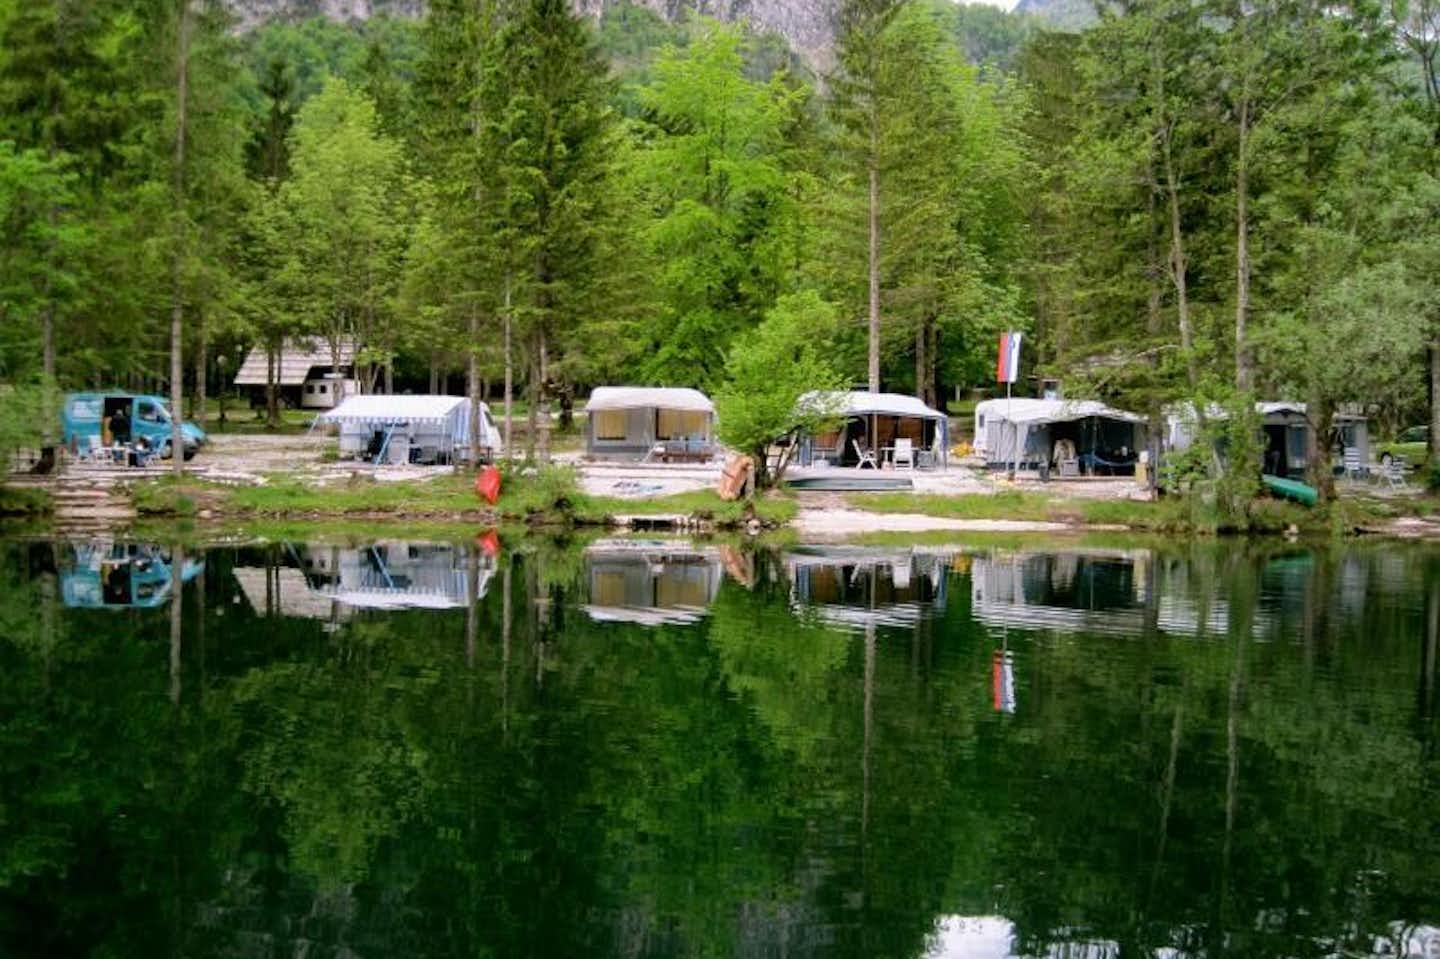 Camping Zlatorog - Wohnwagen mit Vorzelten am Ufer des Sees Bohinjsko jezero